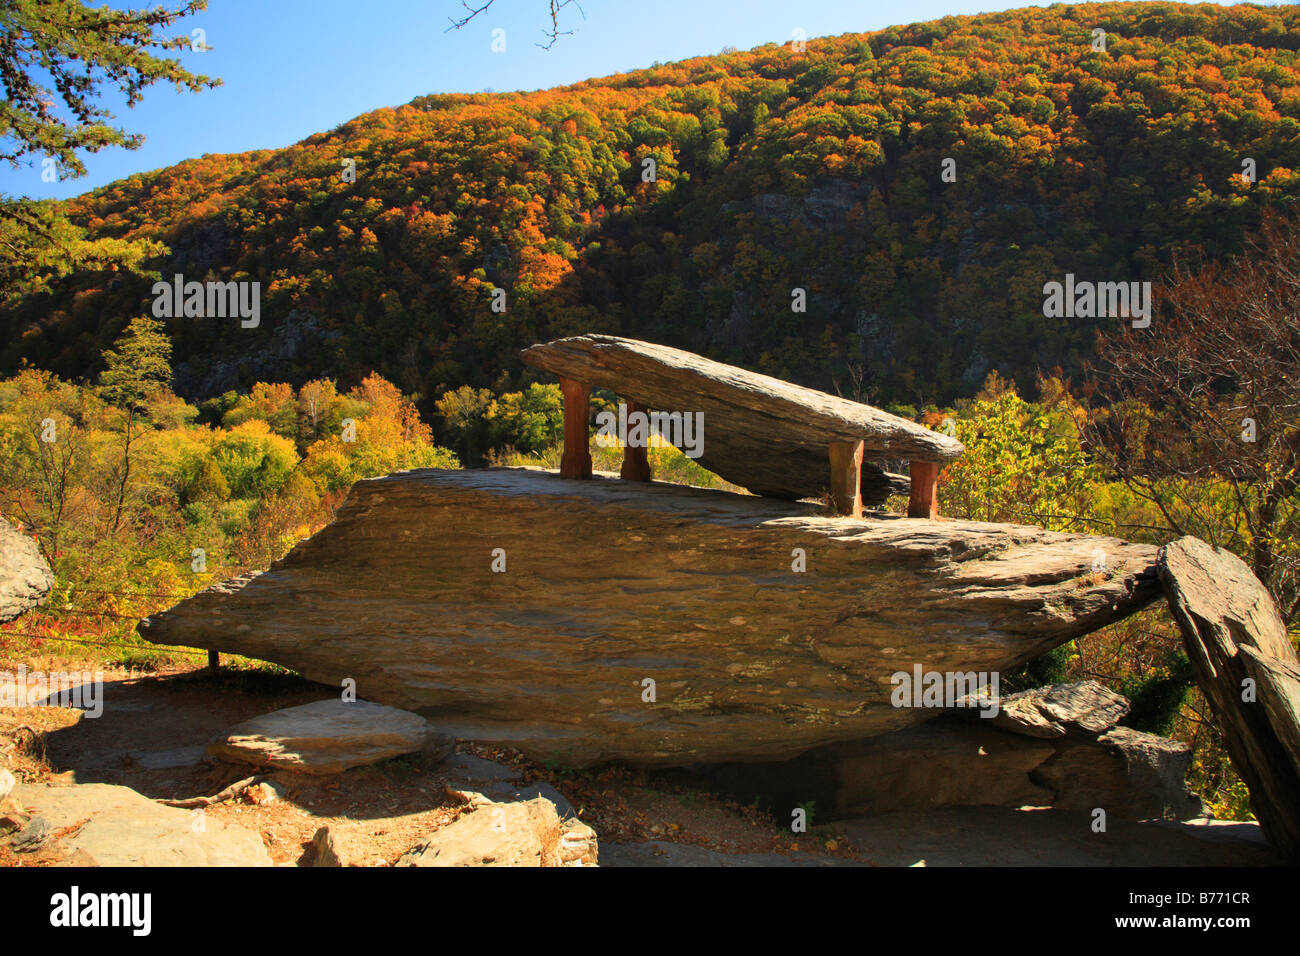 Jefferson Rock, el Appalachian Trail, de Harpers Ferry, Virginia Occidental, EE.UU. Foto de stock